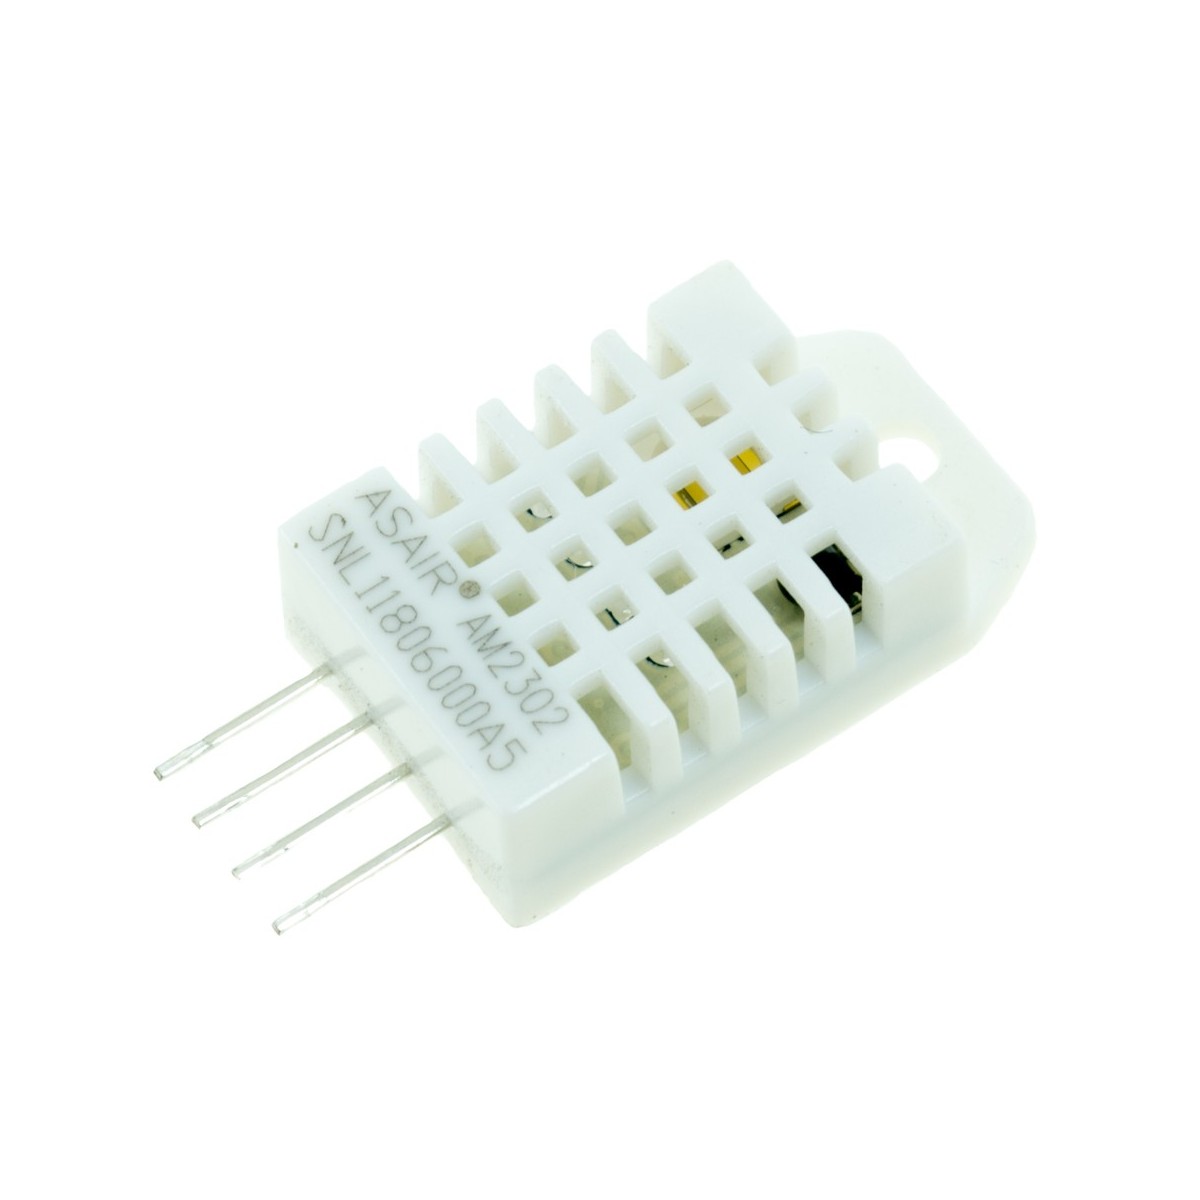 Digital AM2303-Sensor de temperatura y humedad relativa de salida/módulo 